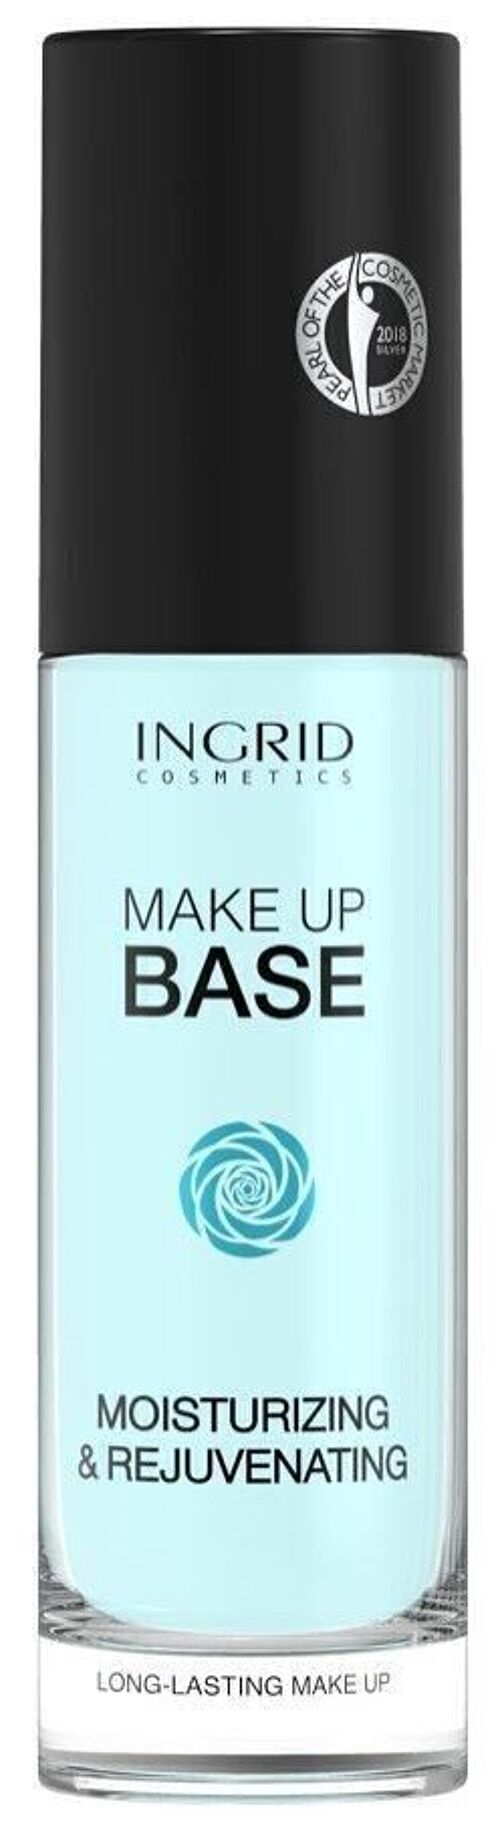 Base de teint longue durée hydratante et rajeunissante Ingrid Cosmetics - 30 ml